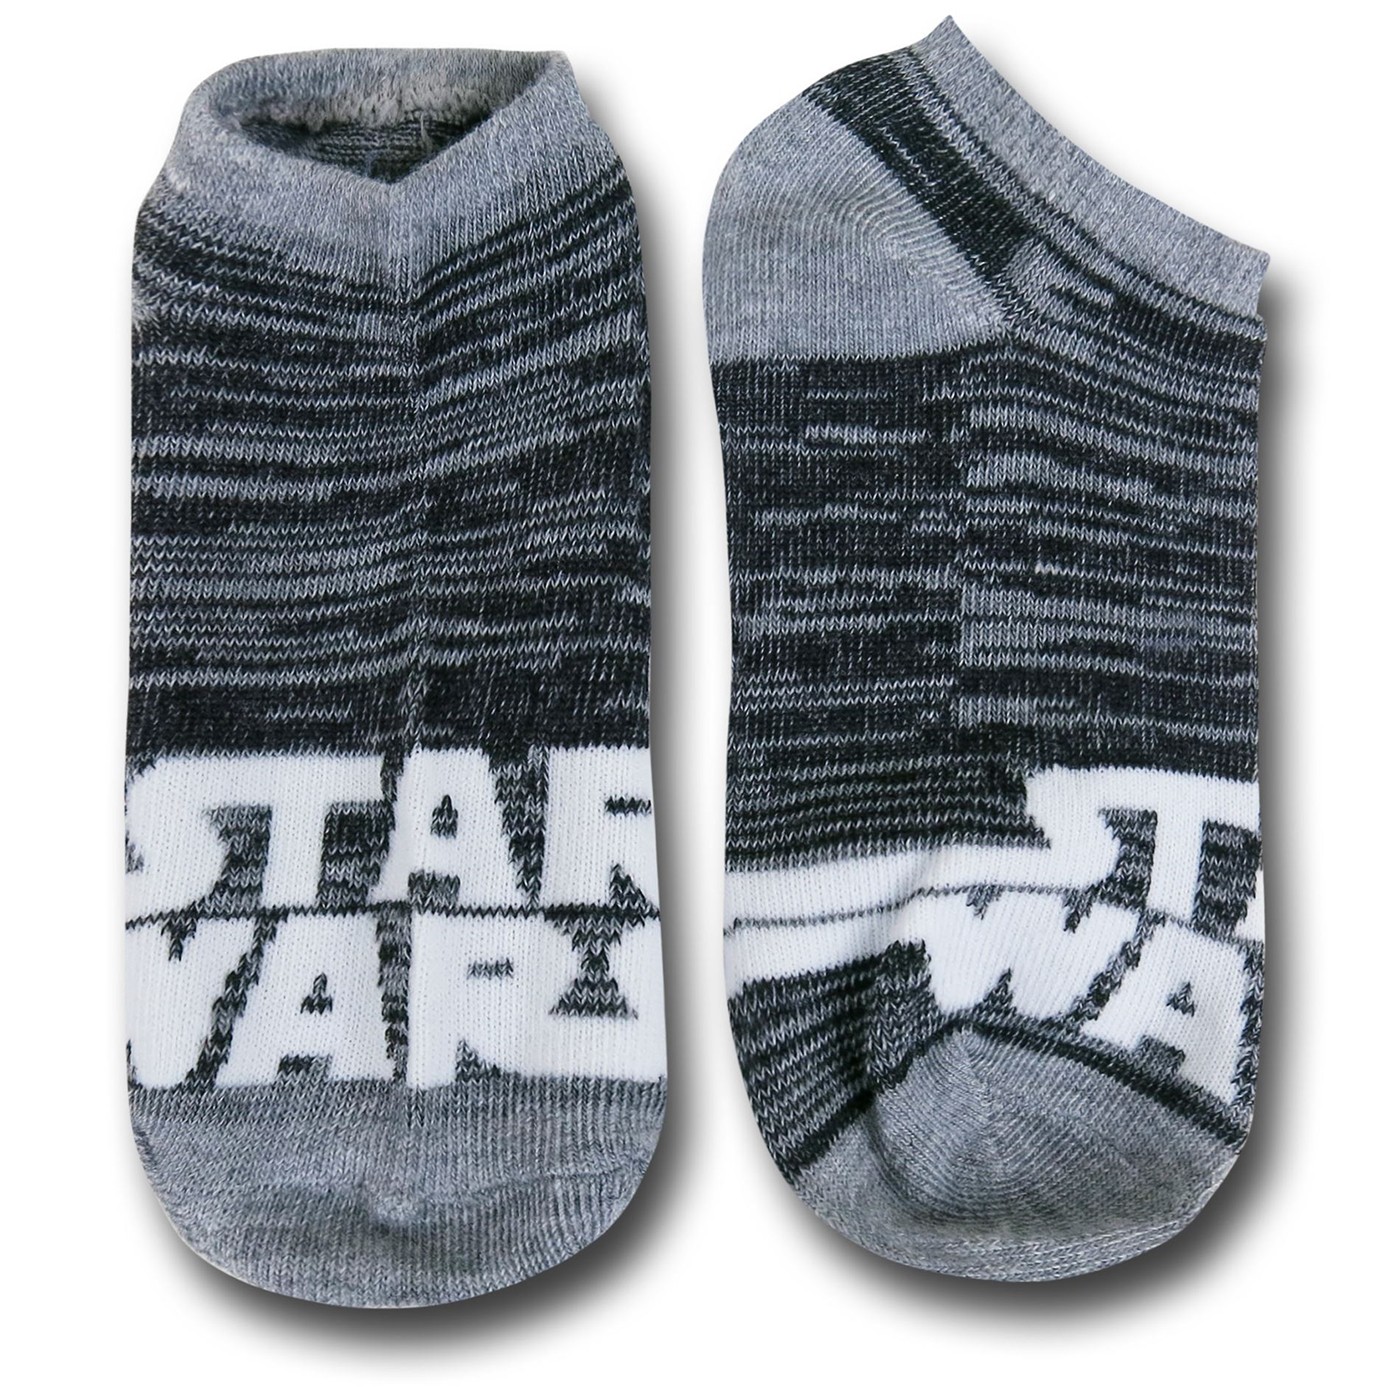 Star Wars Character String 5 Pack Boys Socks